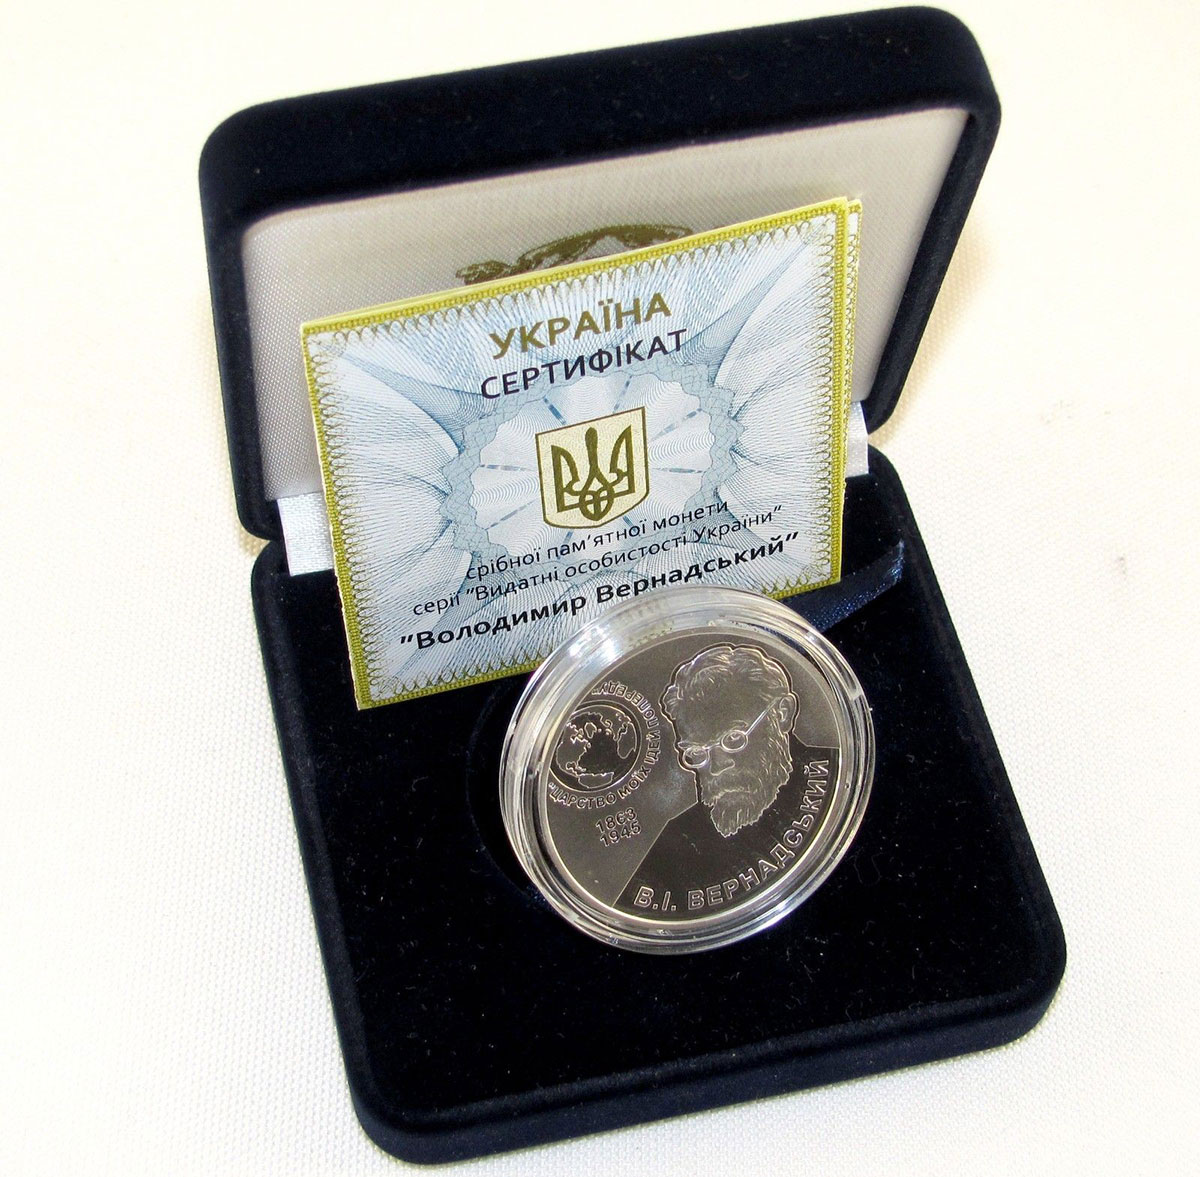 Ukraine 5 hryvnia Volodymyr Vernadsky Scientist silver coin 2013